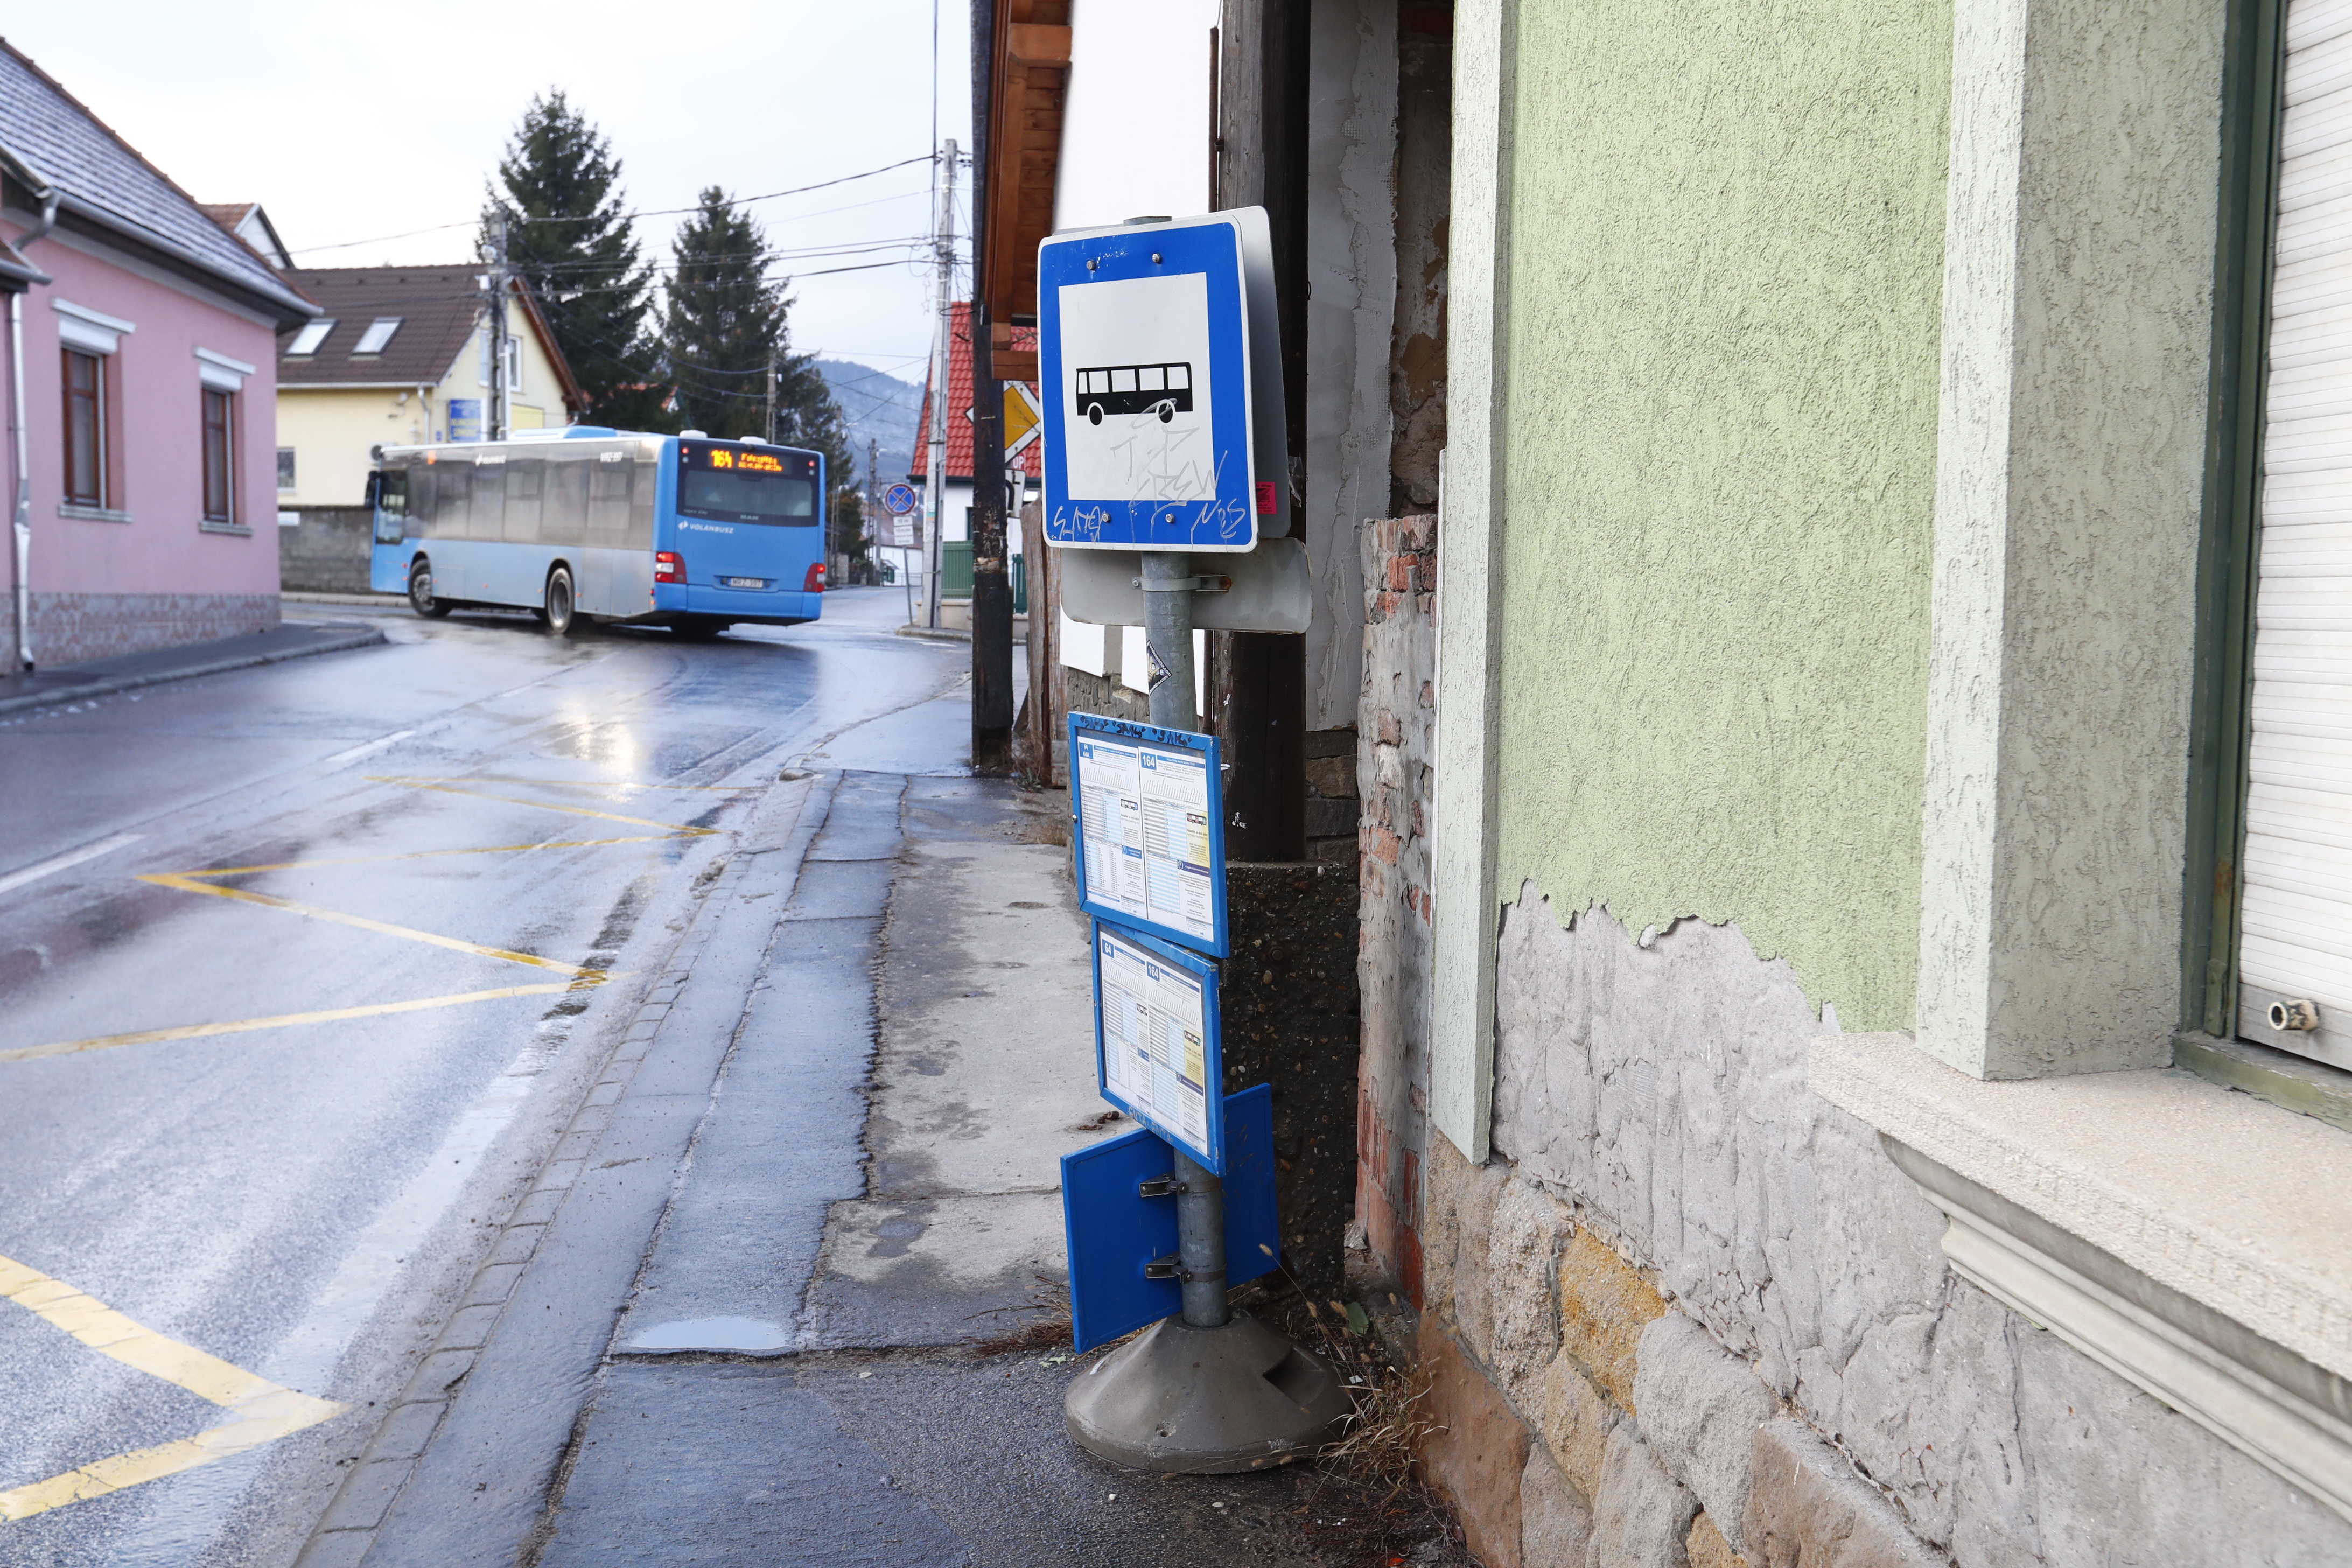 Mindenképp formabontó: igazán bizarr táblával sikerült meglepnie a BKK-nak  a solymáriakat a helyi buszmegállóban - Blikk